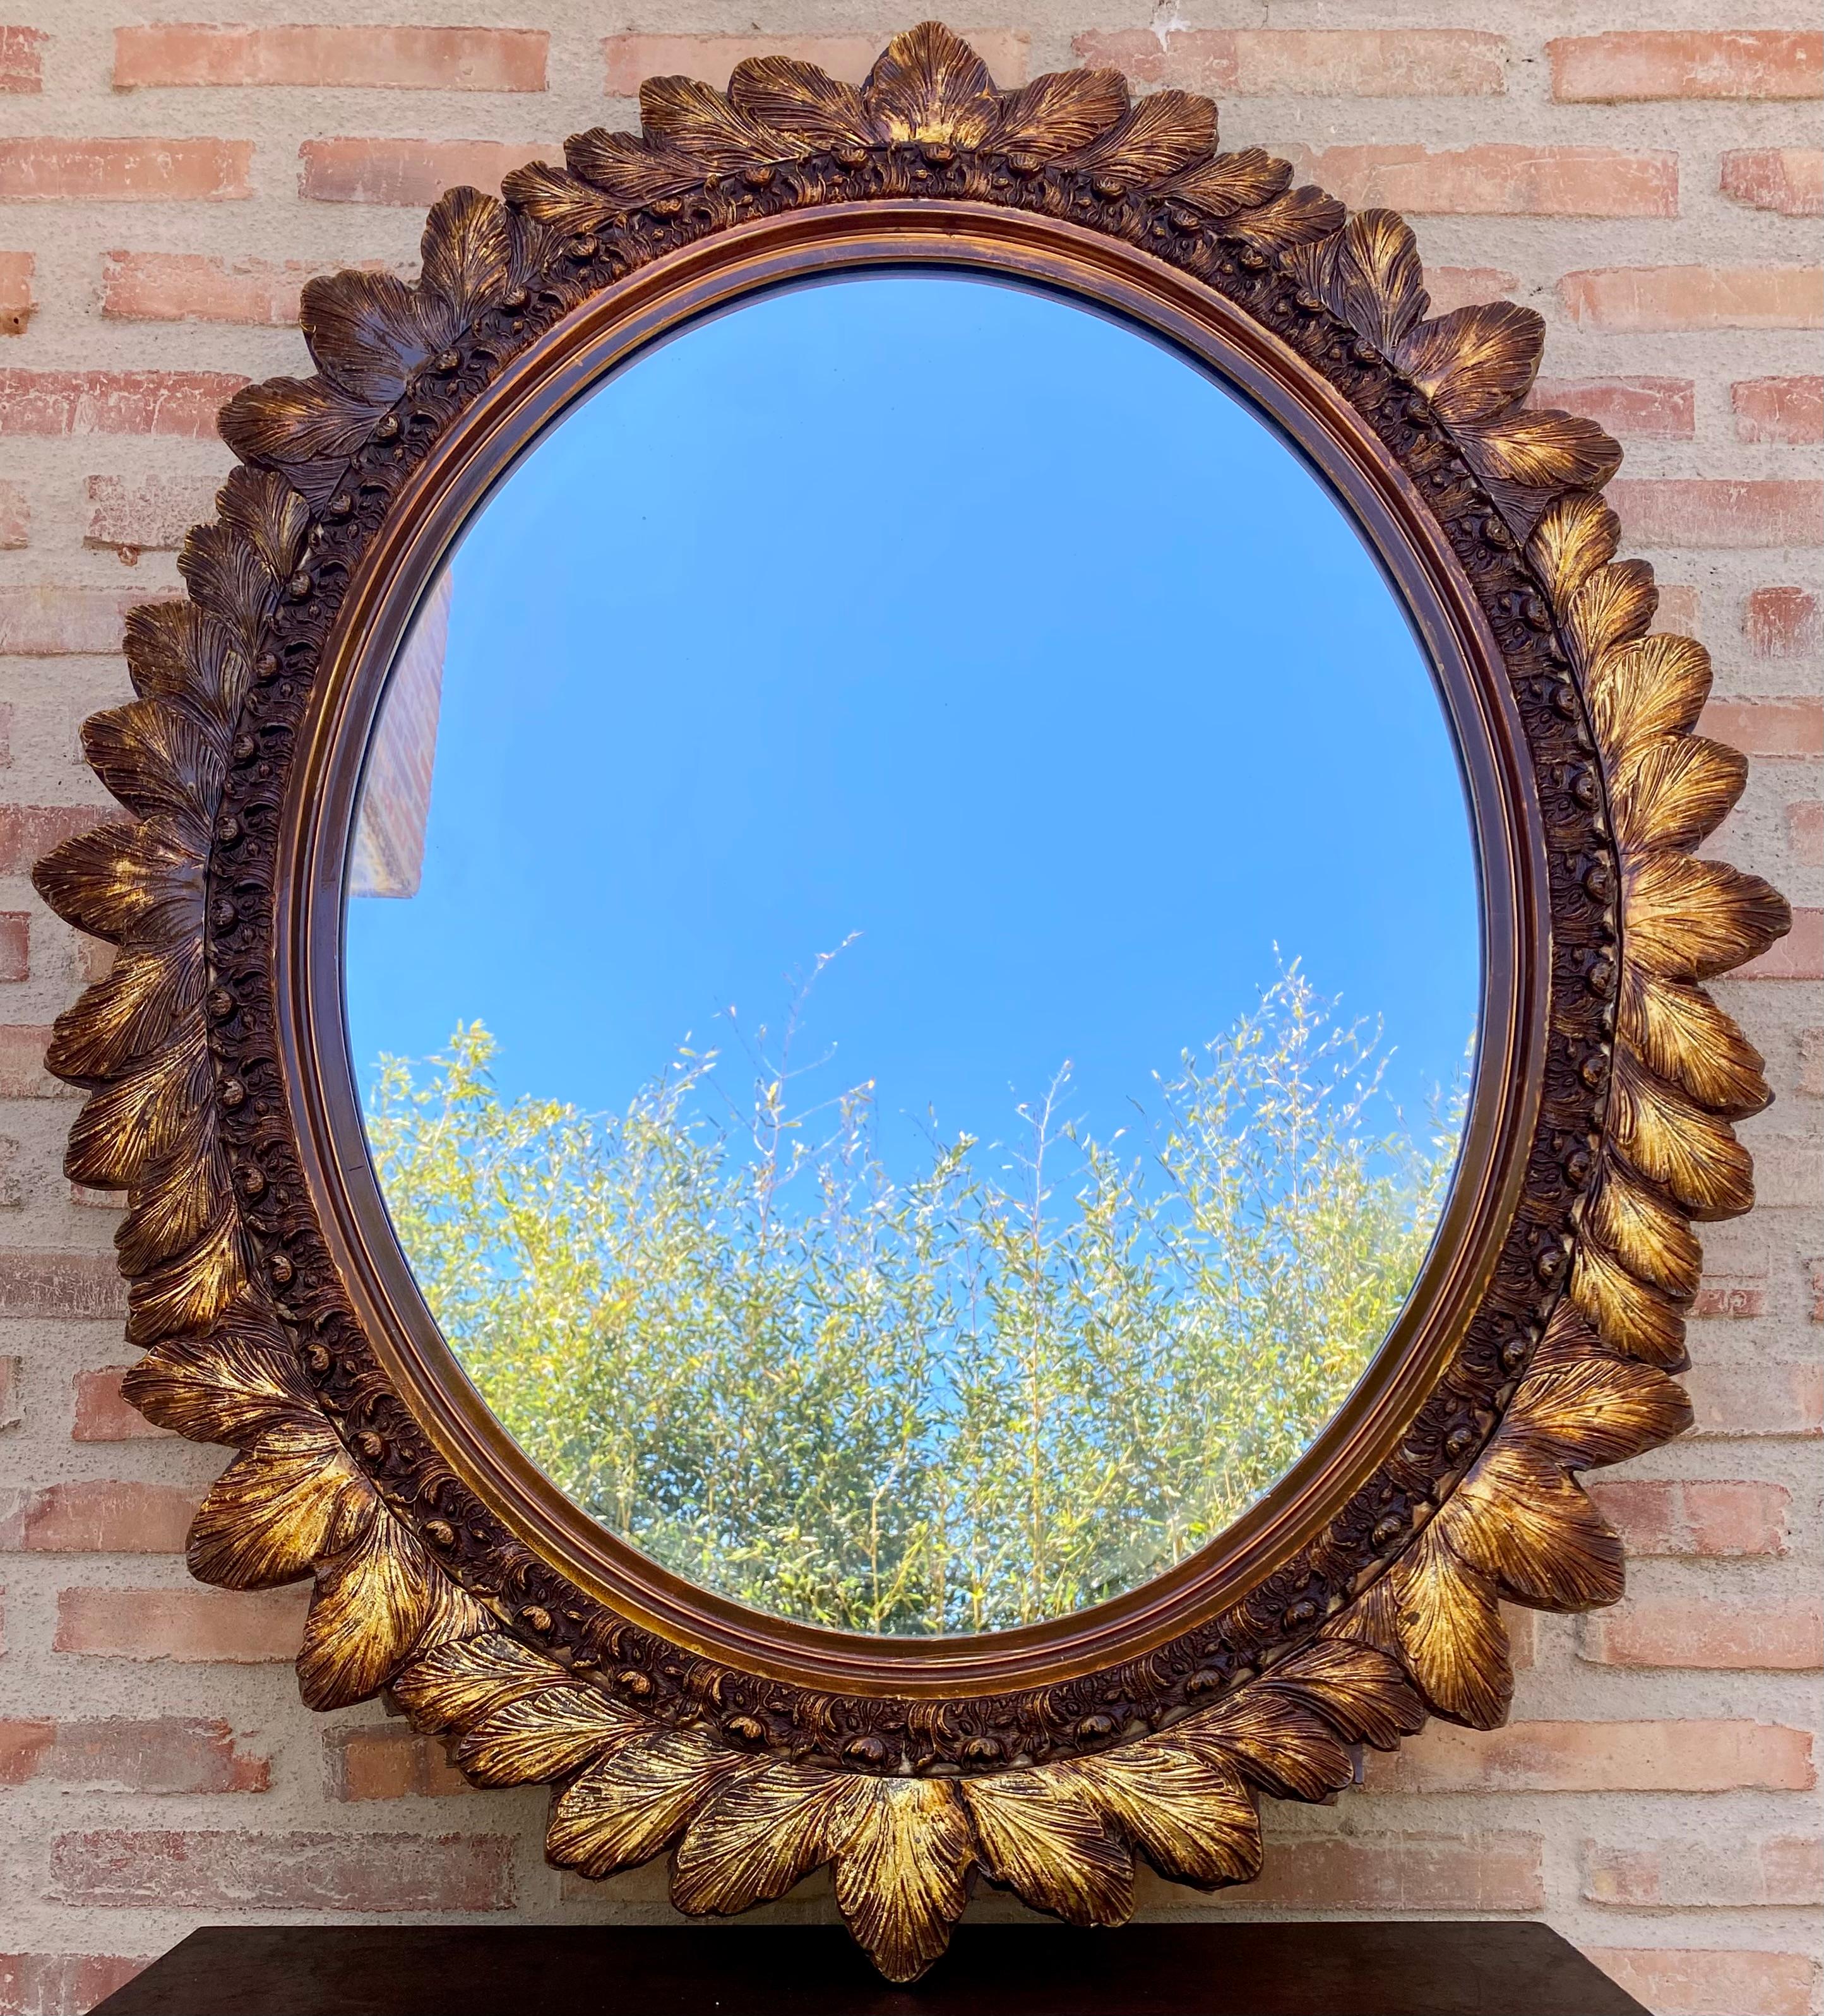 Ein schöner großer ovaler Spiegel in einem goldenen Zierrahmen mit Blumen aus Frankreich. Der Rahmen ist aus Holz gefertigt. Der Spiegel ist in sehr gutem Vintage-Zustand ohne Schäden oder Risse am Rahmen. Original Glas. Ein echtes Einzelstück für